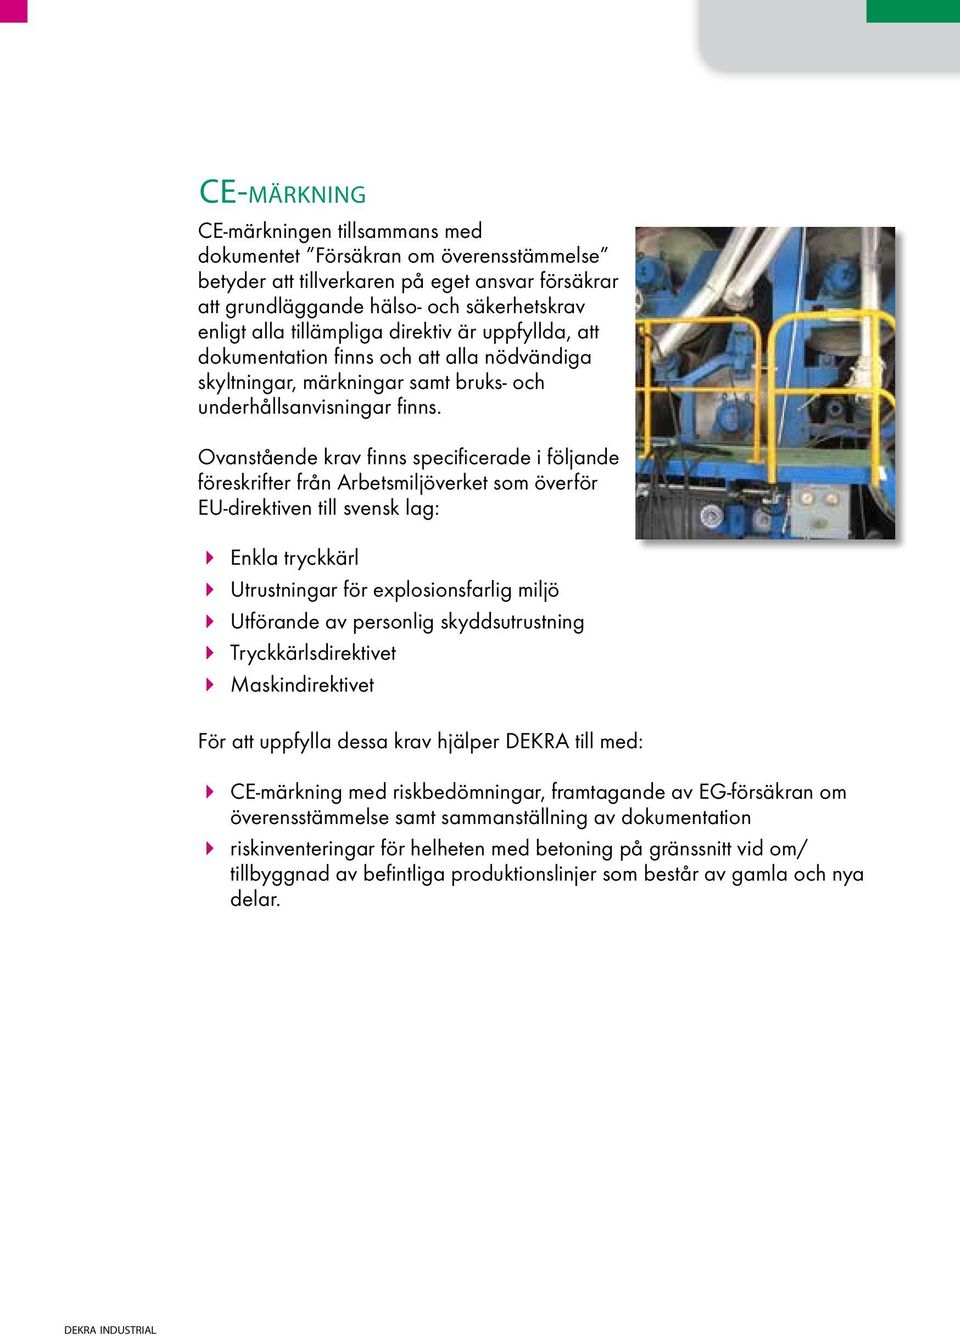 Ovanstående krav finns specificerade i följande föreskrifter från Arbetsmiljöverket som överför EU-direktiven till svensk lag: Enkla tryckkärl Utrustningar för explosionsfarlig miljö Utförande av